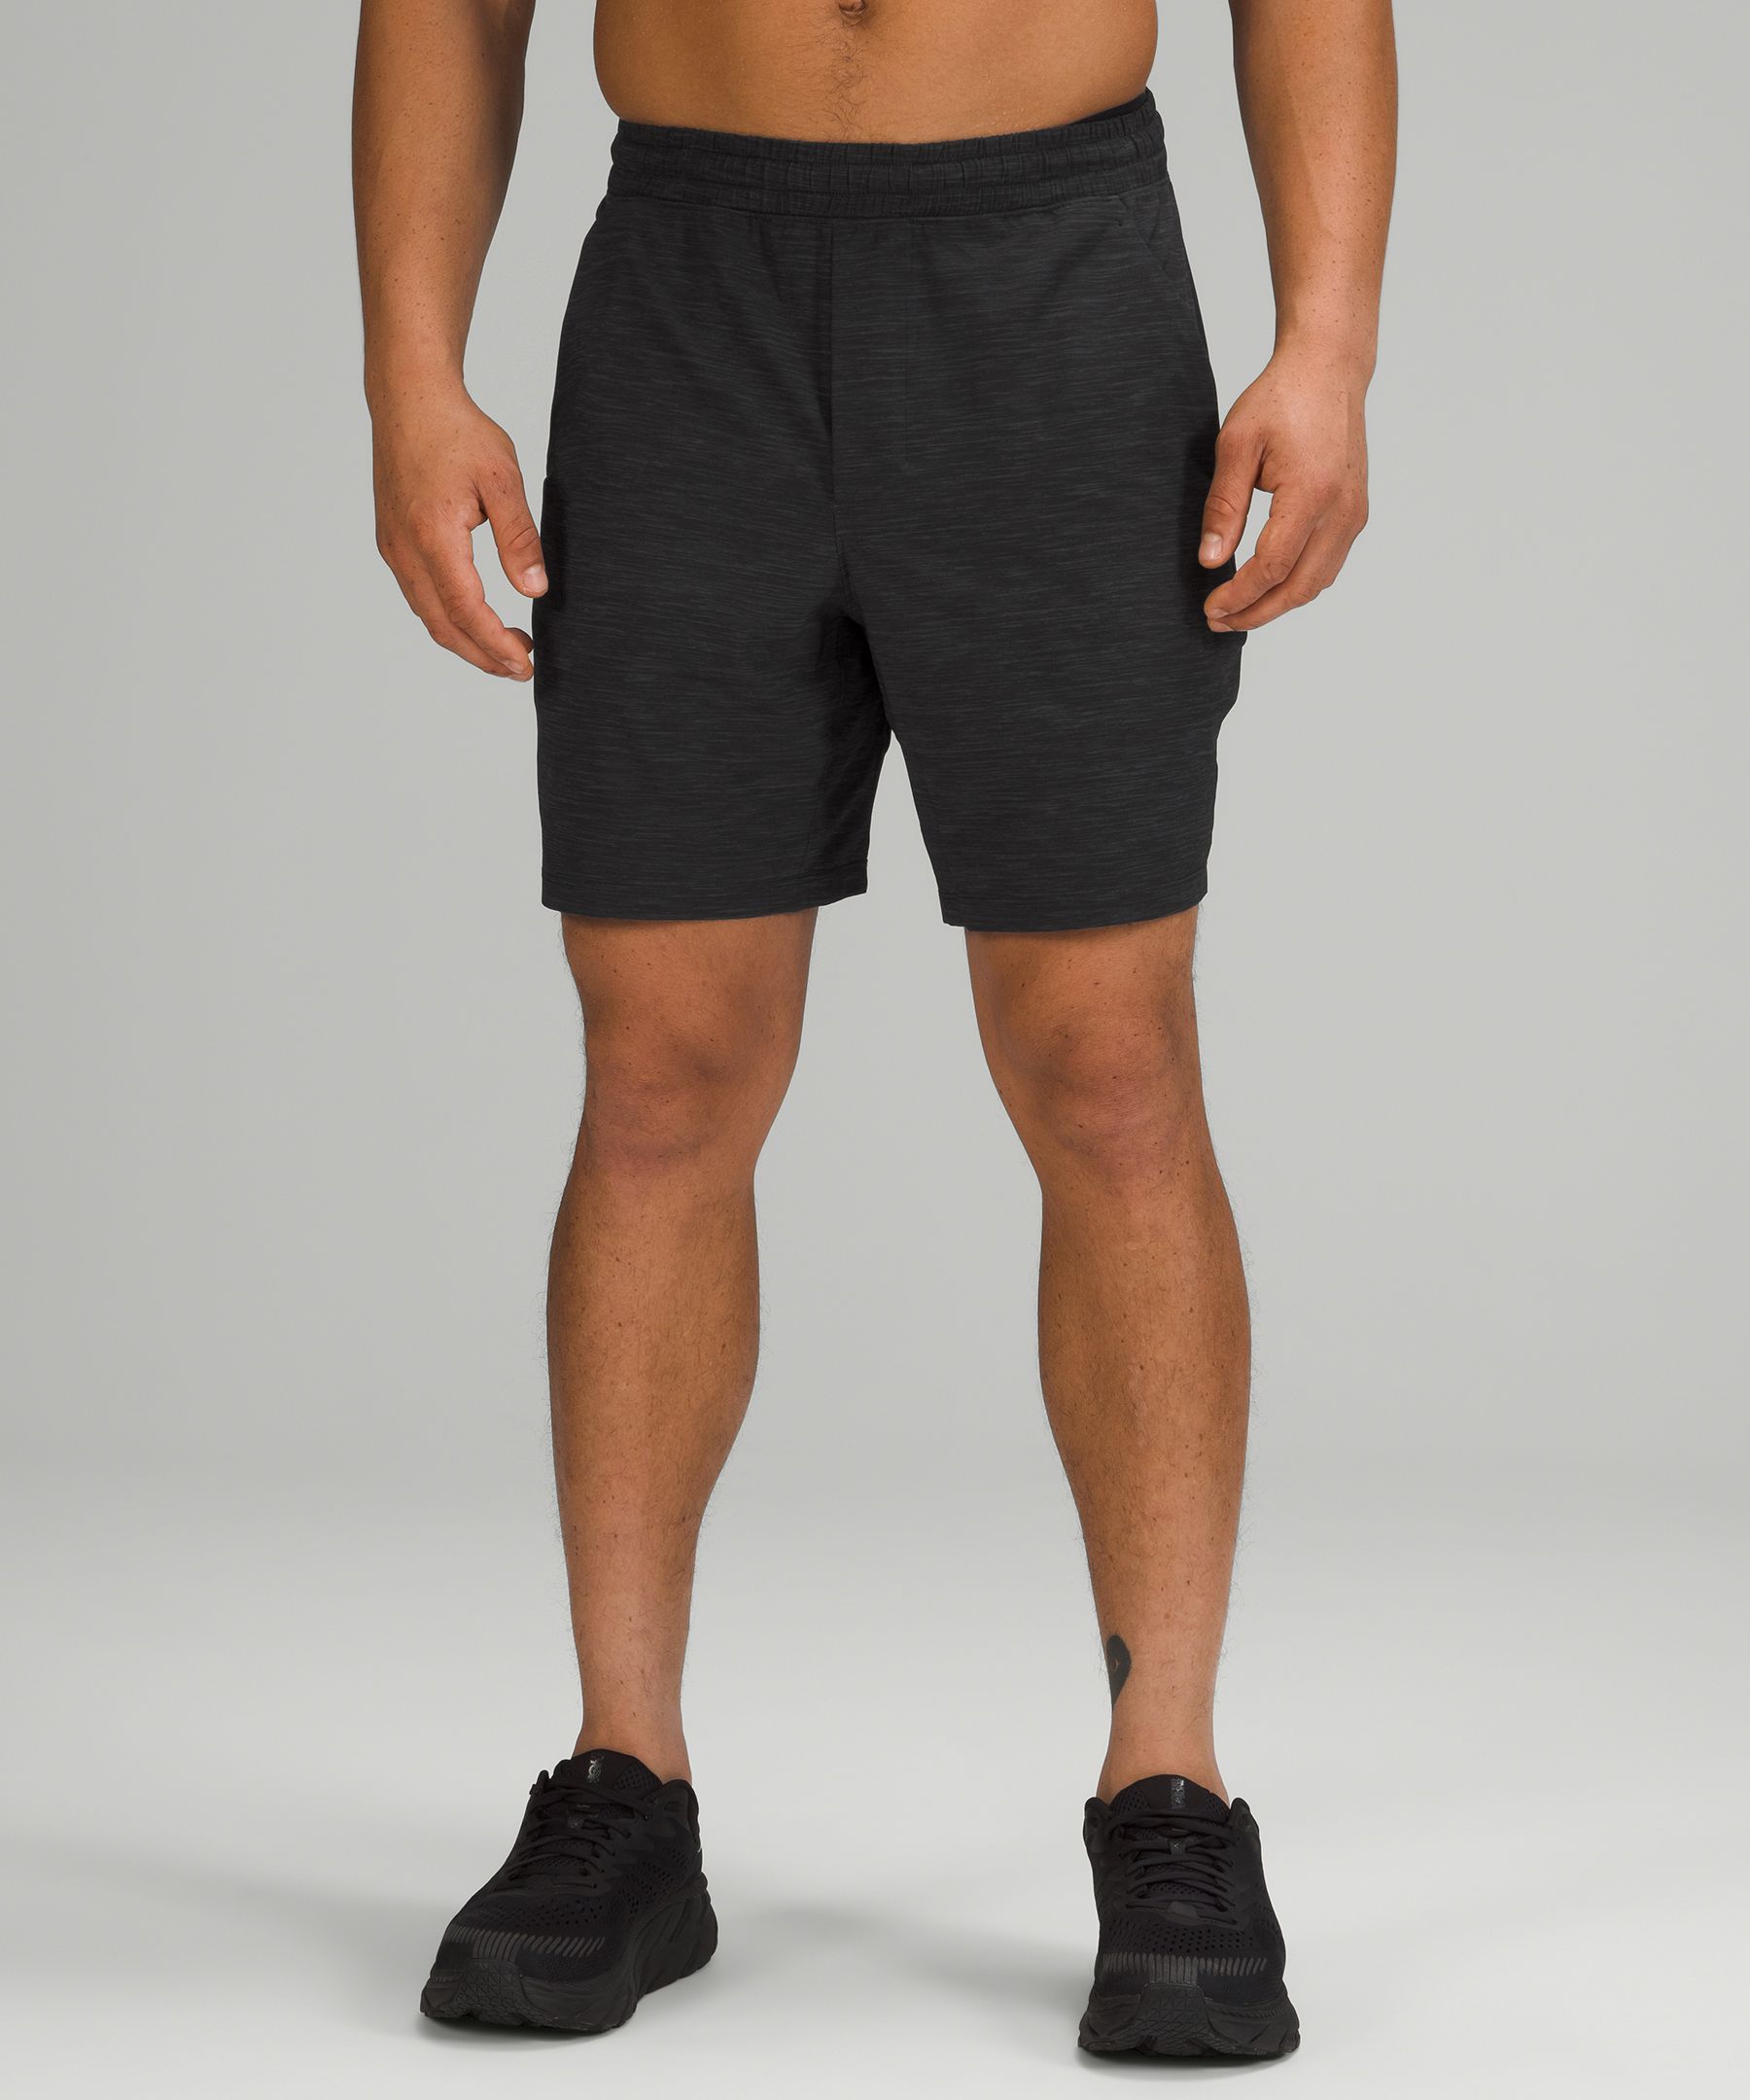 lululemon black shorts